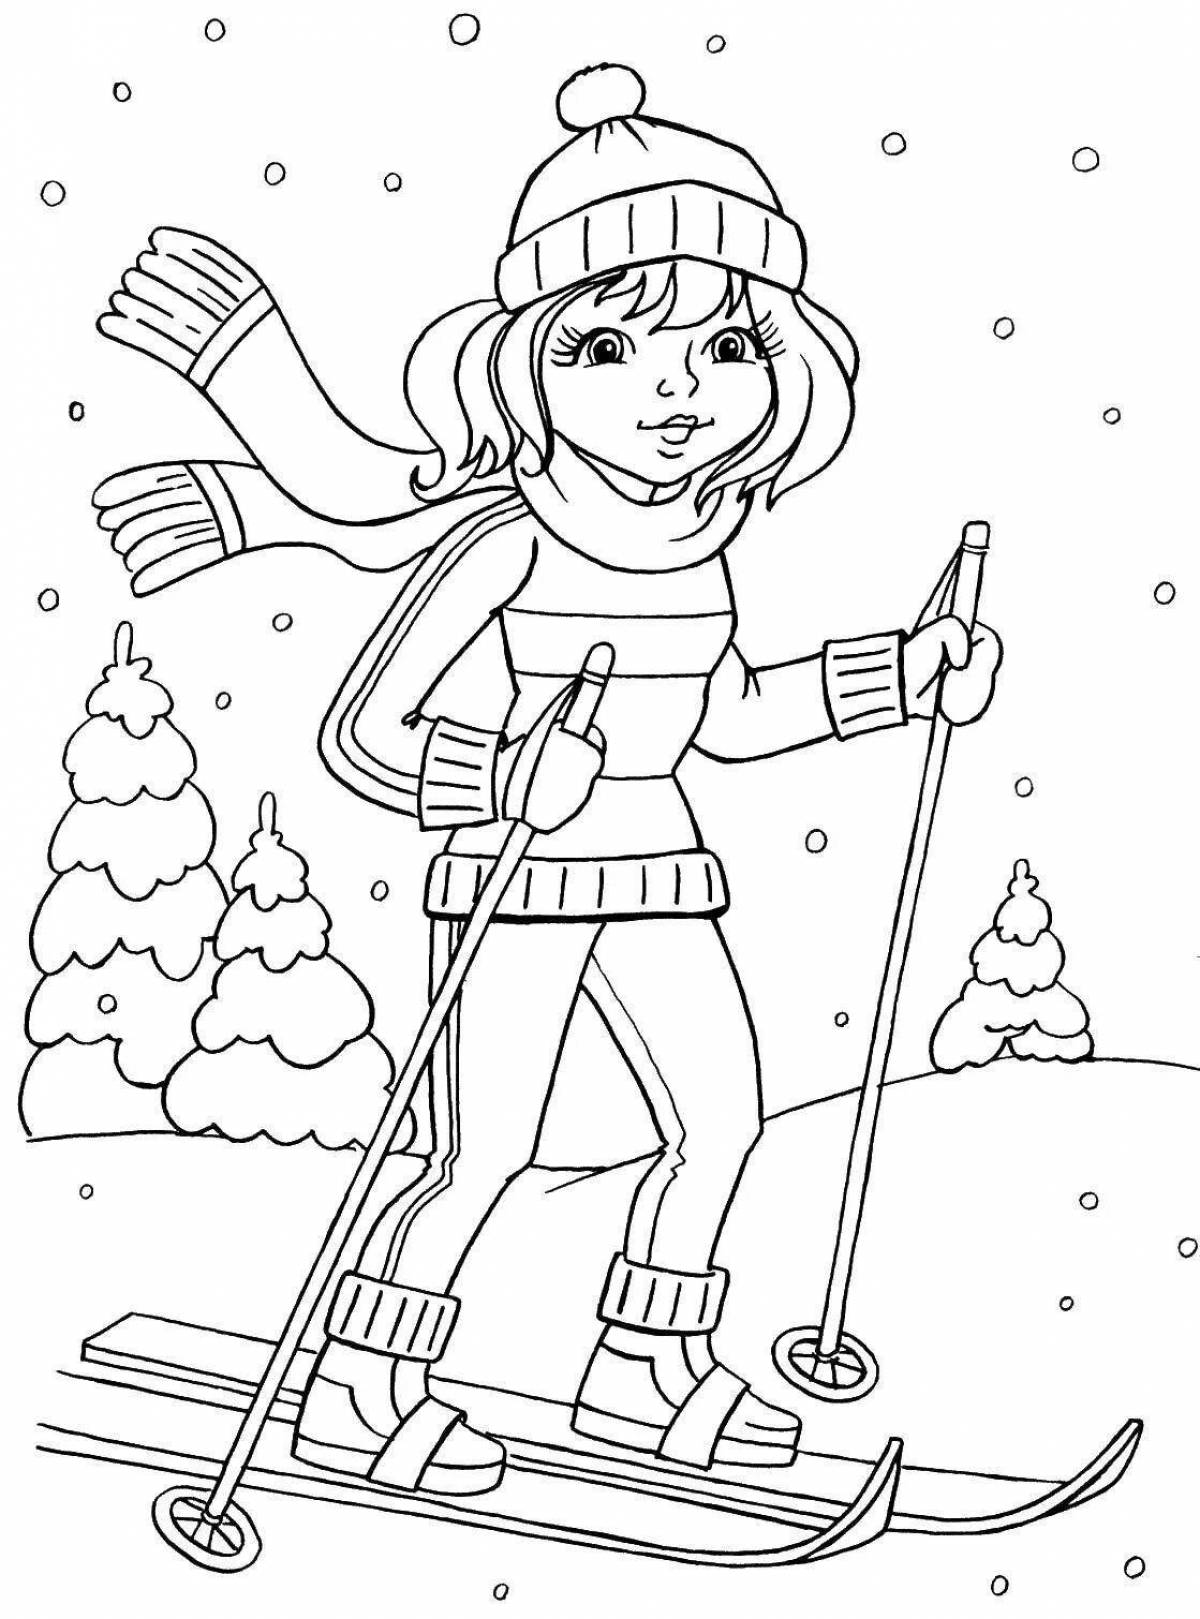 Preschool skier fun coloring book